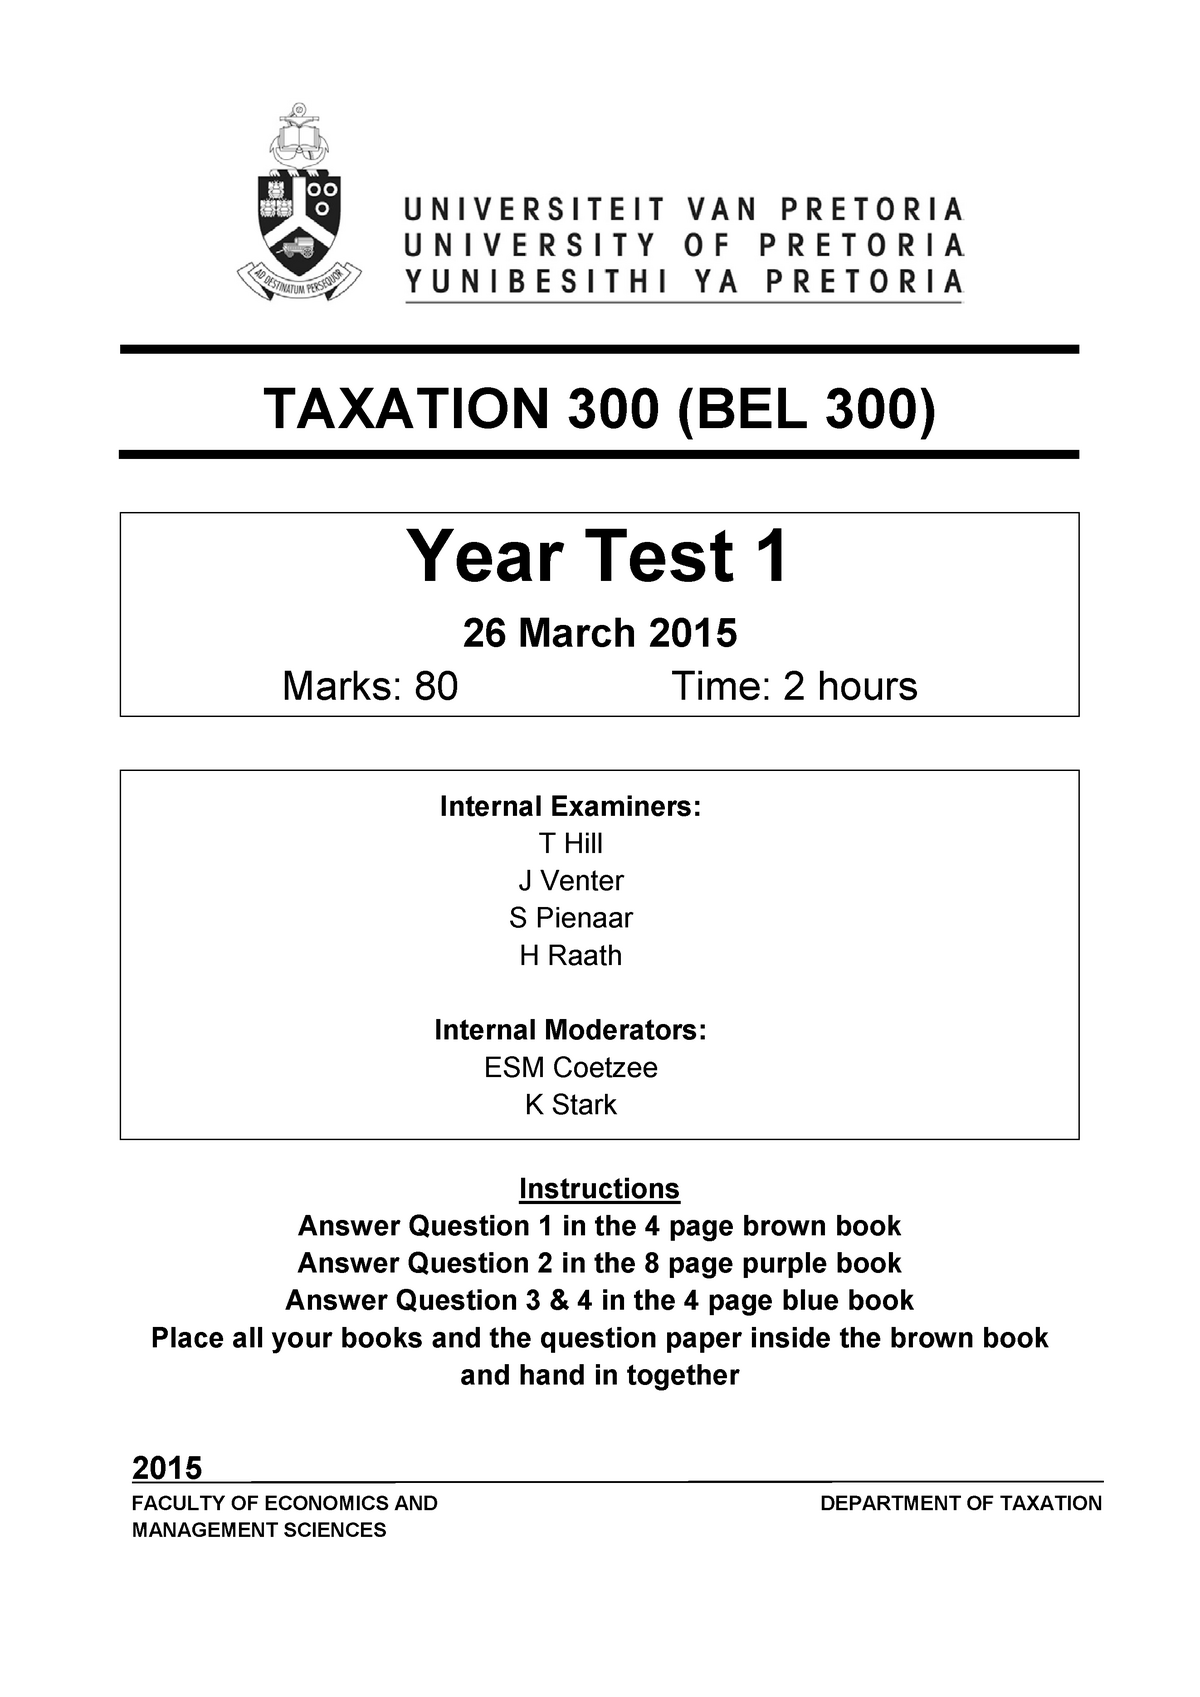 year-test-1-2015-final-year-test-2b-taxation-300-bel-300-0b-year-test-1-1b-26-march-2015